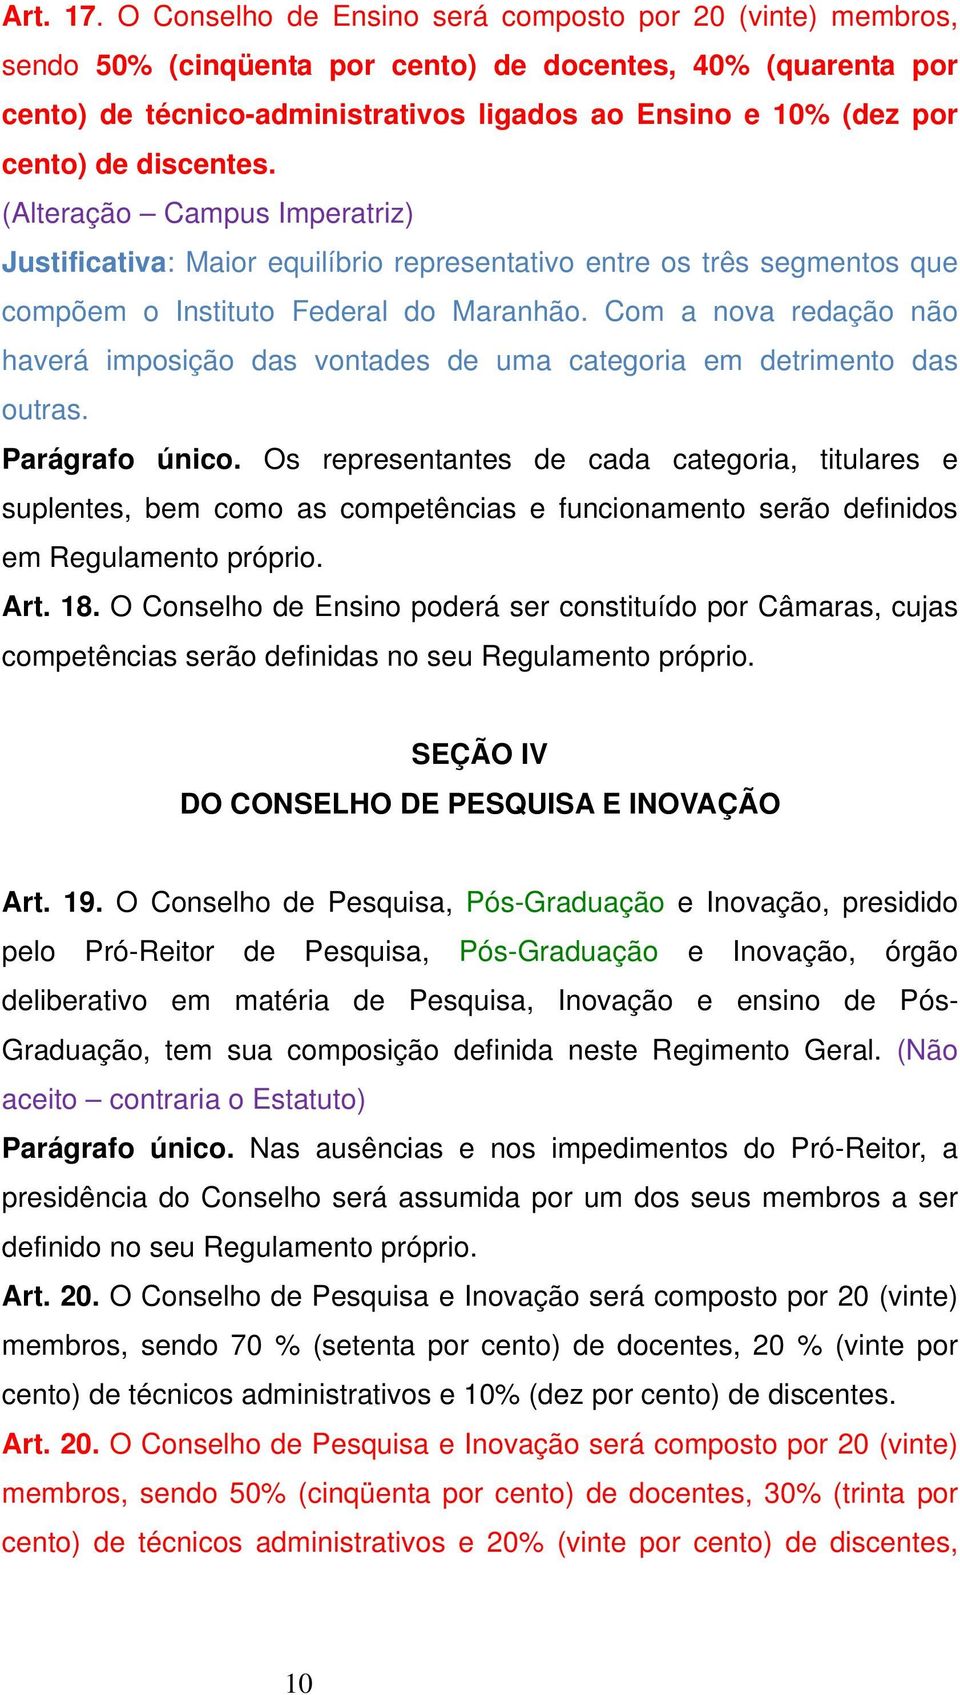 discentes. (Alteração Campus Imperatriz) Justificativa: Maior equilíbrio representativo entre os três segmentos que compõem o Instituto Federal do Maranhão.